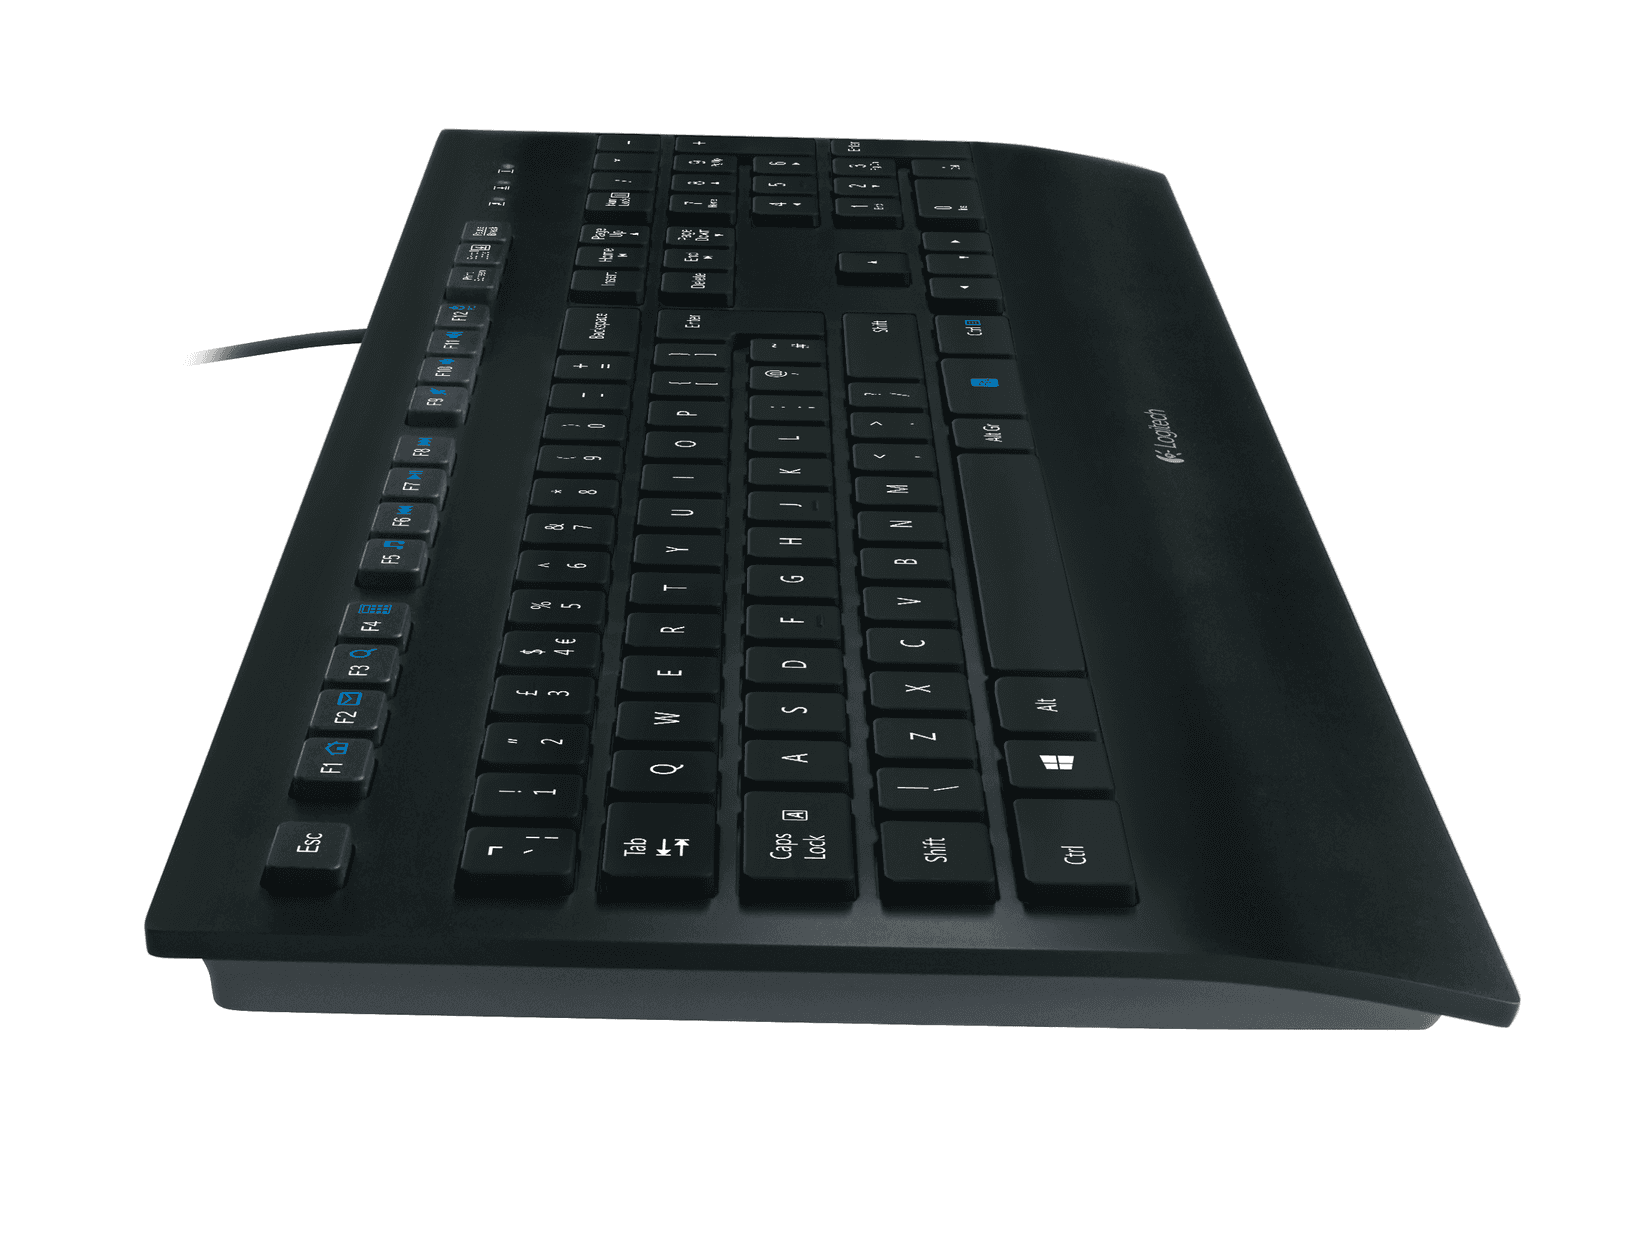 Selected image for Logitech K280E Tastatura, USB, US